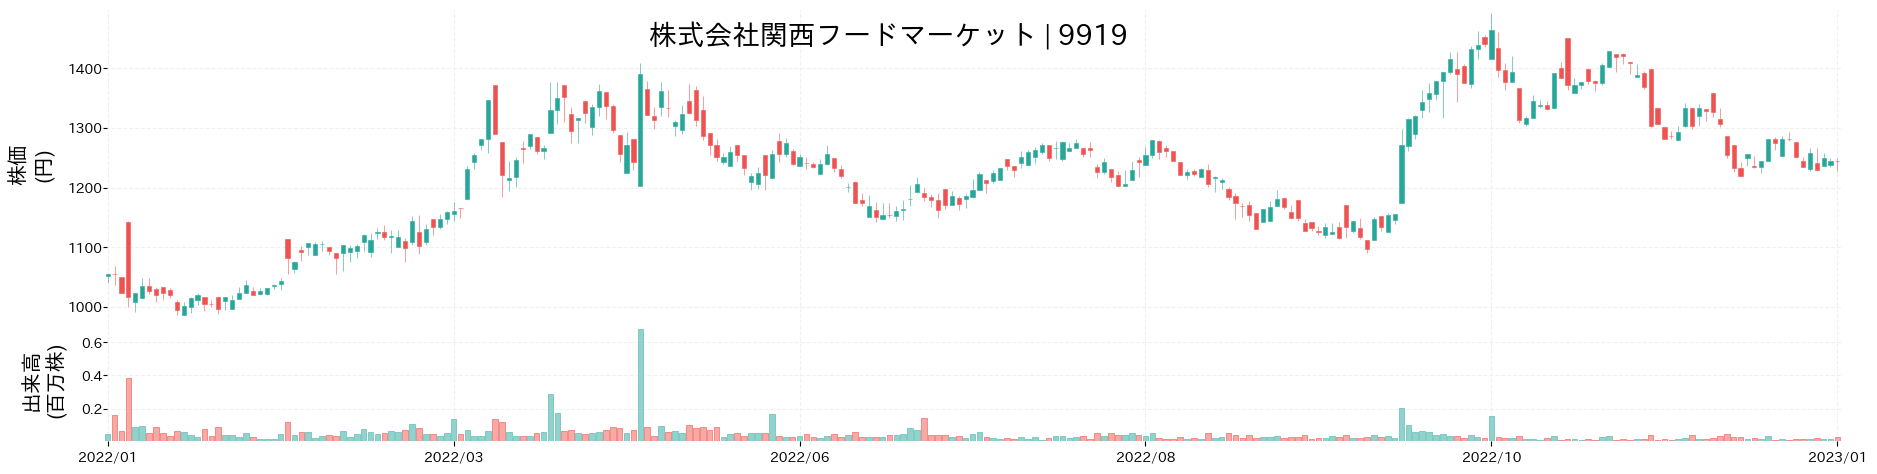 関西フードマーケットの株価推移(2022)